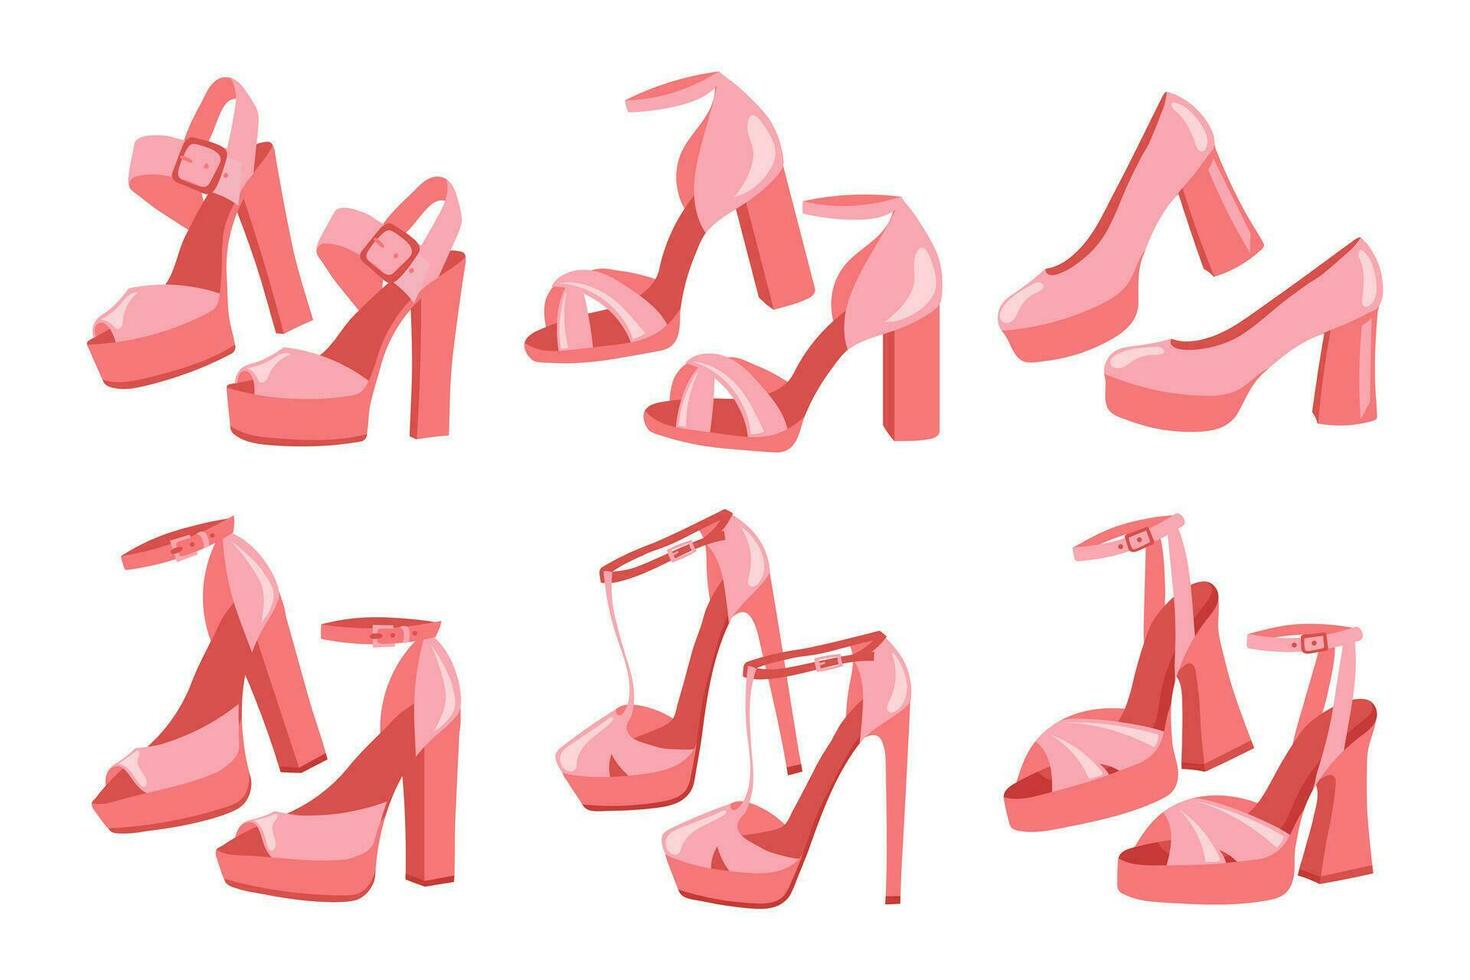 conjunto de De las mujeres tacones altos Zapatos en retro estilo. colección de rosado Clásico zapatos. ropa y accesorios. ilustración. vector